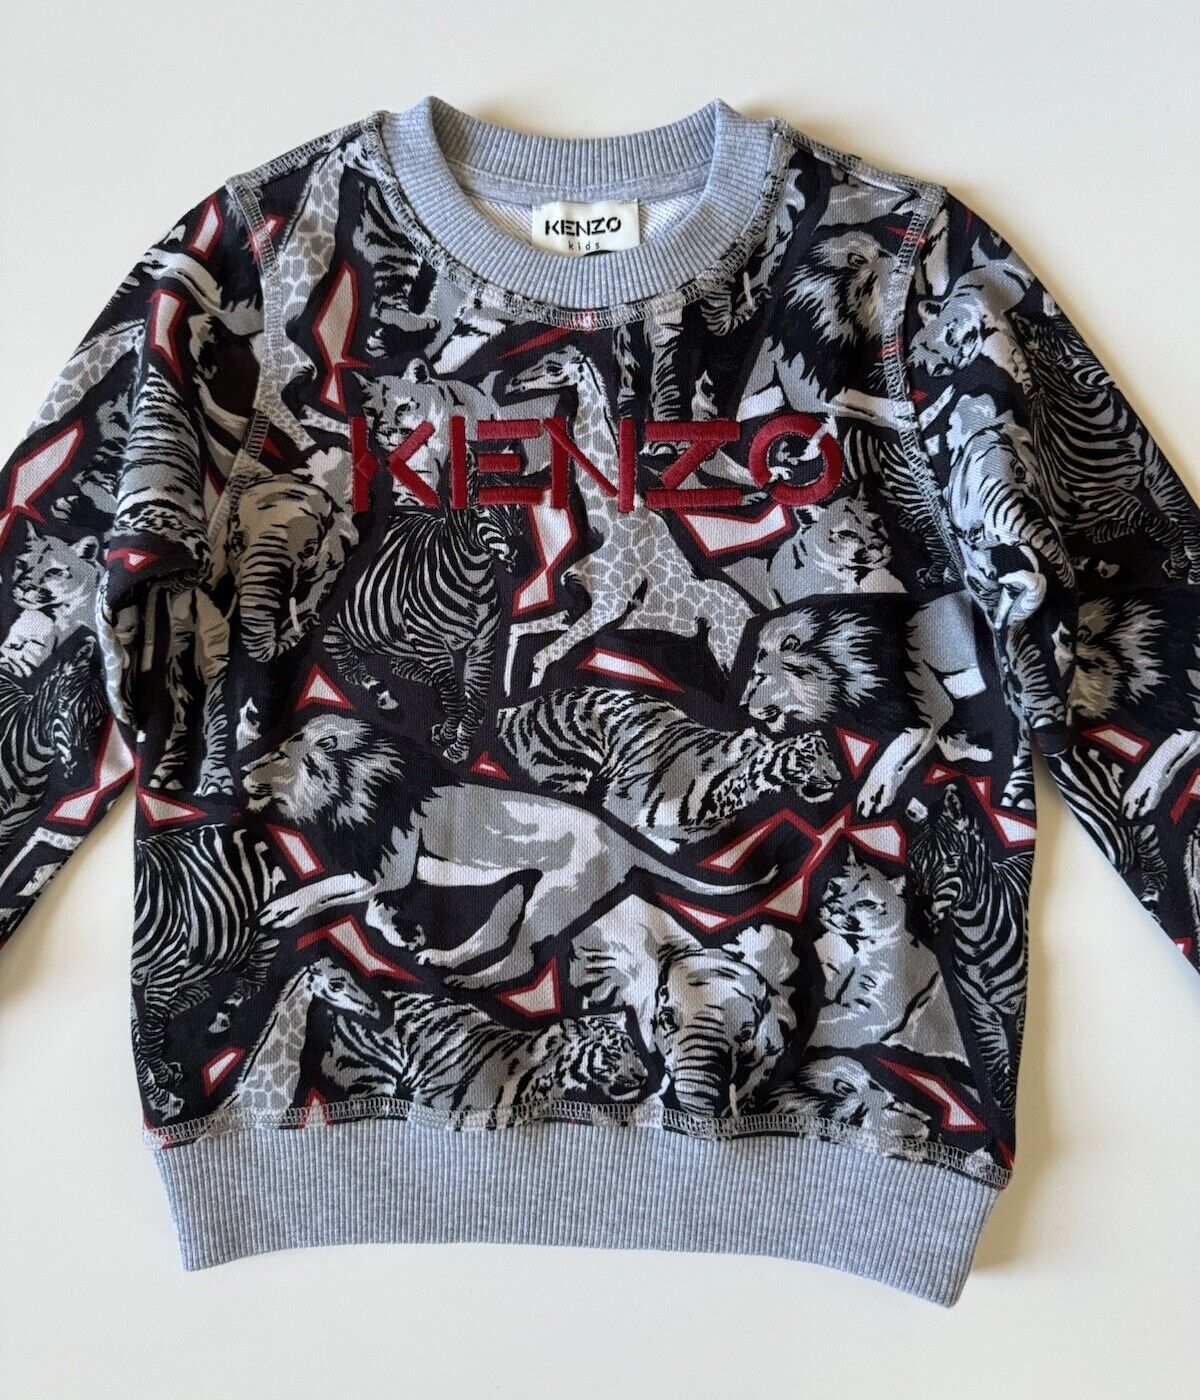 NWT Kenzo Animal Print Boys Cotton Sweater Size 4T